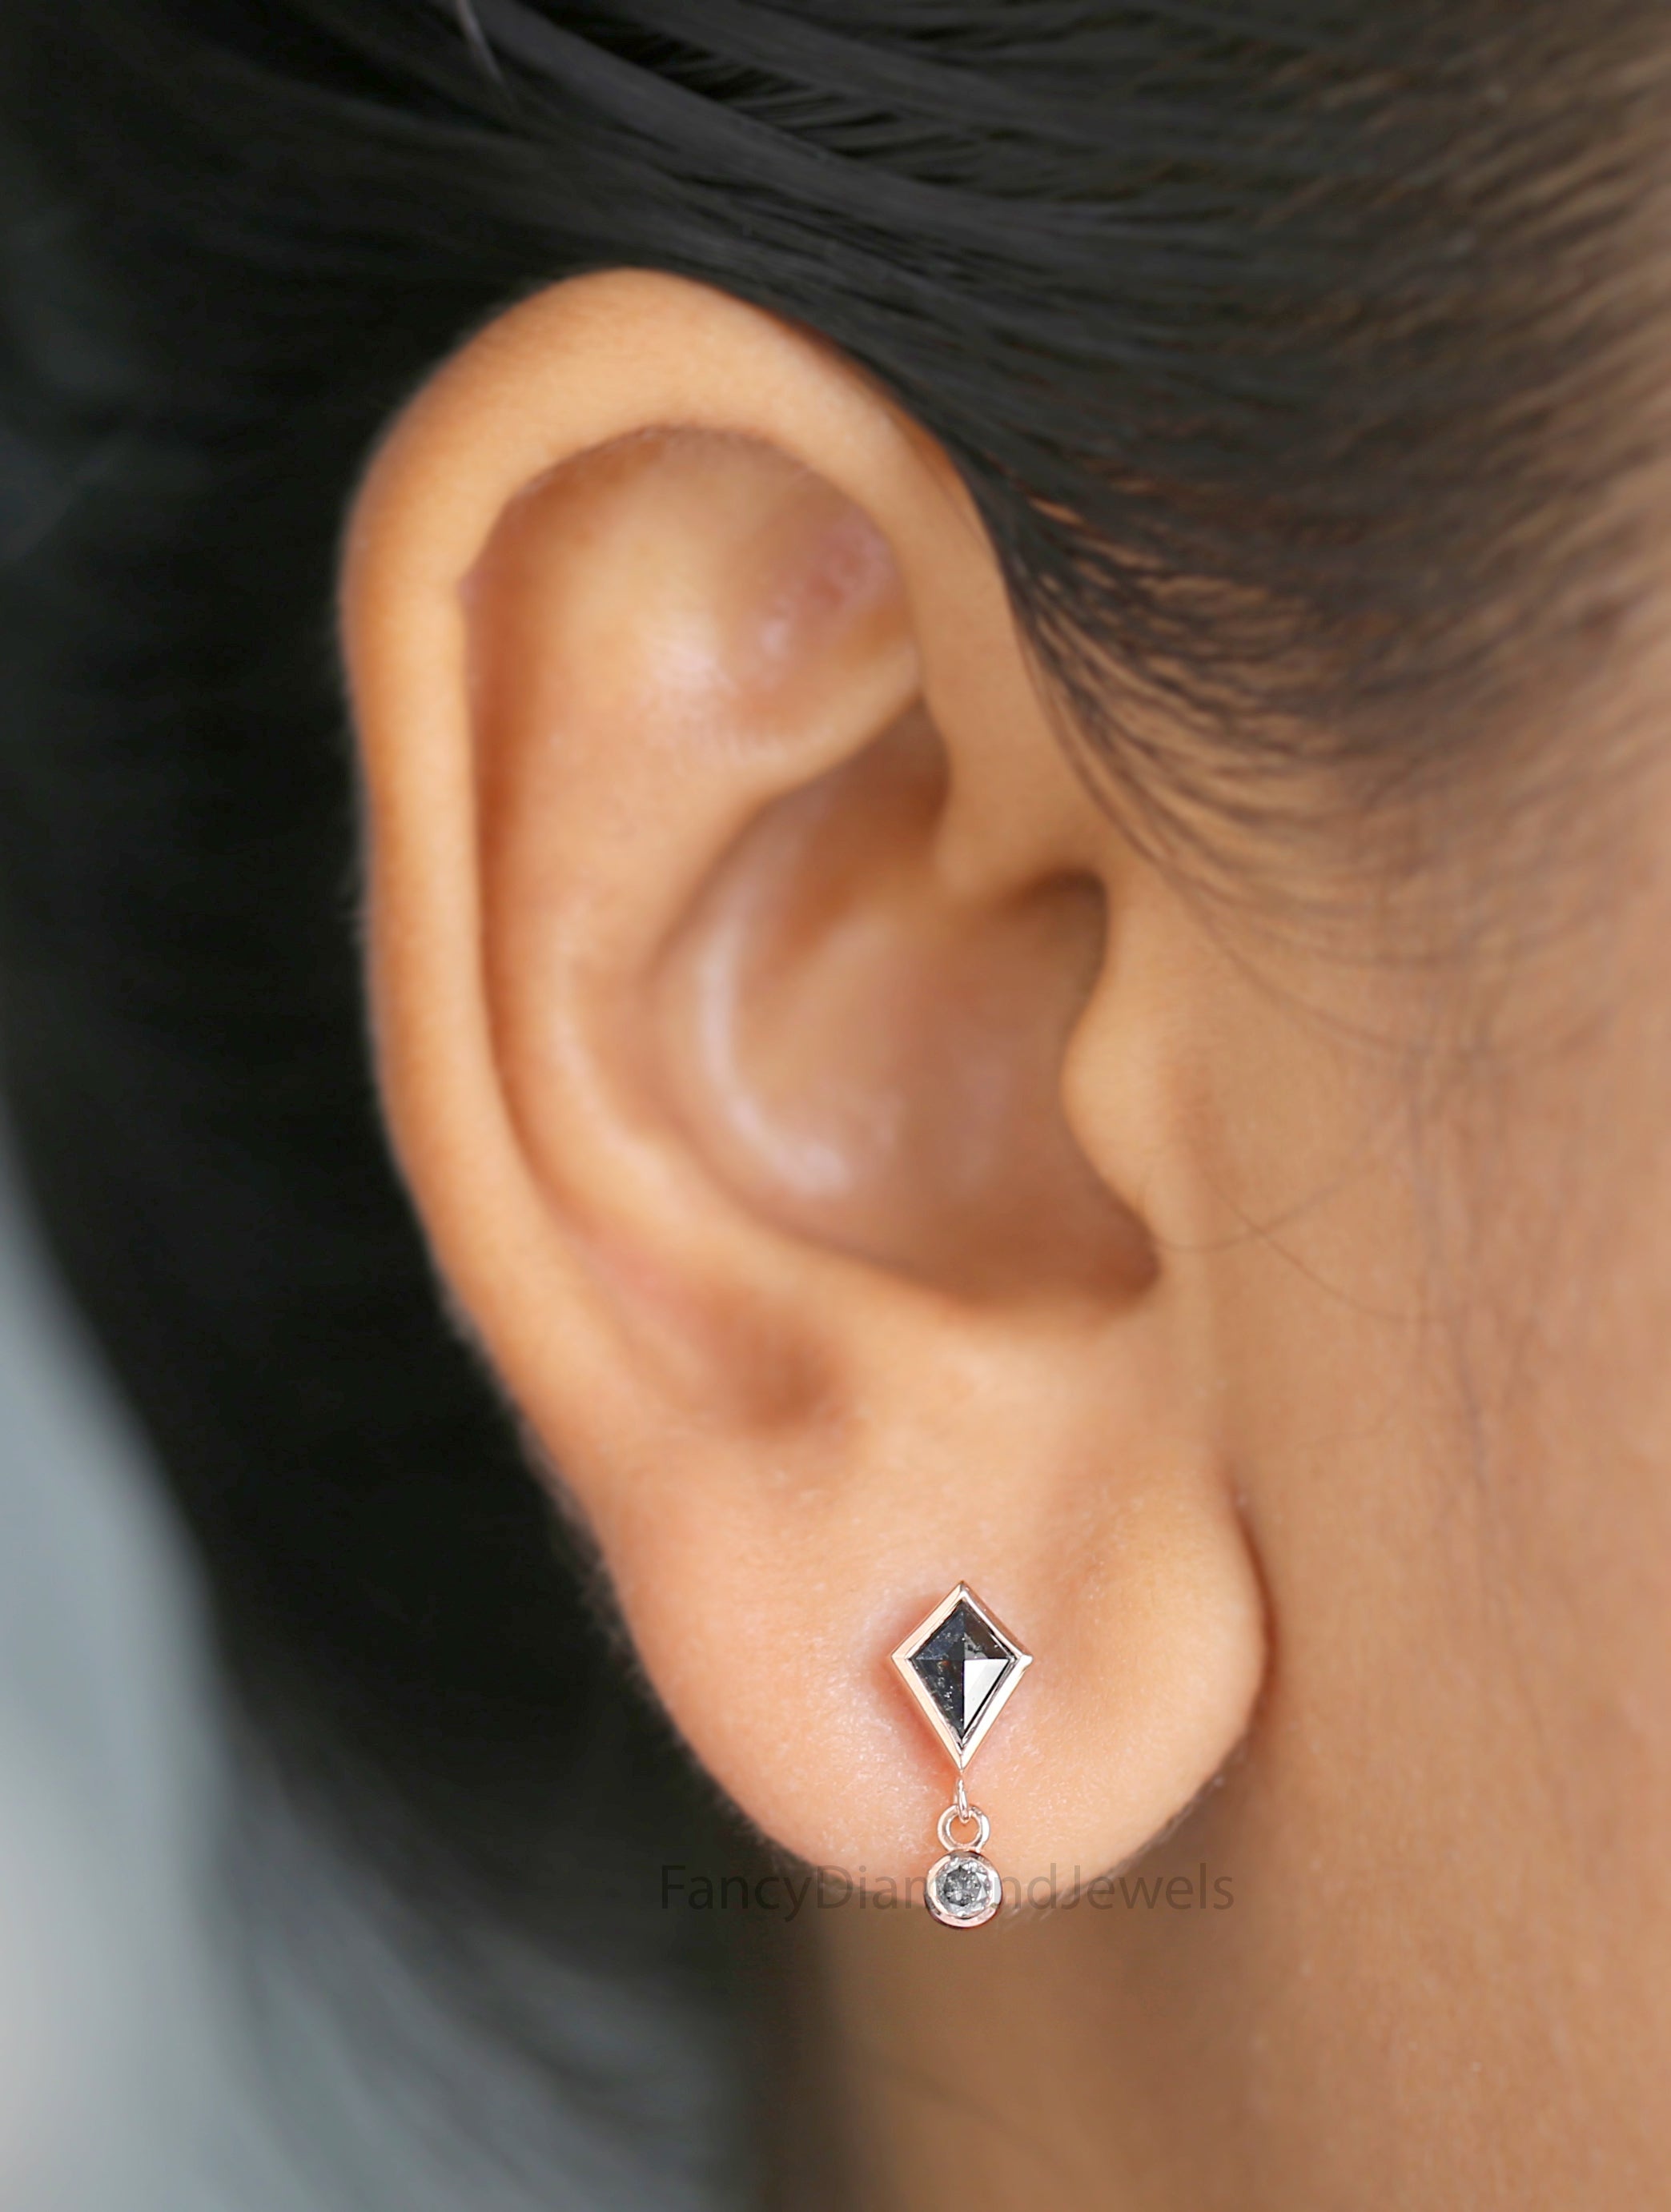 Kite Salt And Pepper Diamond Earring 0.66 Ct 6.39 MM Kite Diamond Earring 14K Solid Rose Gold Silver Engagement Earring Gift For Her QL2801